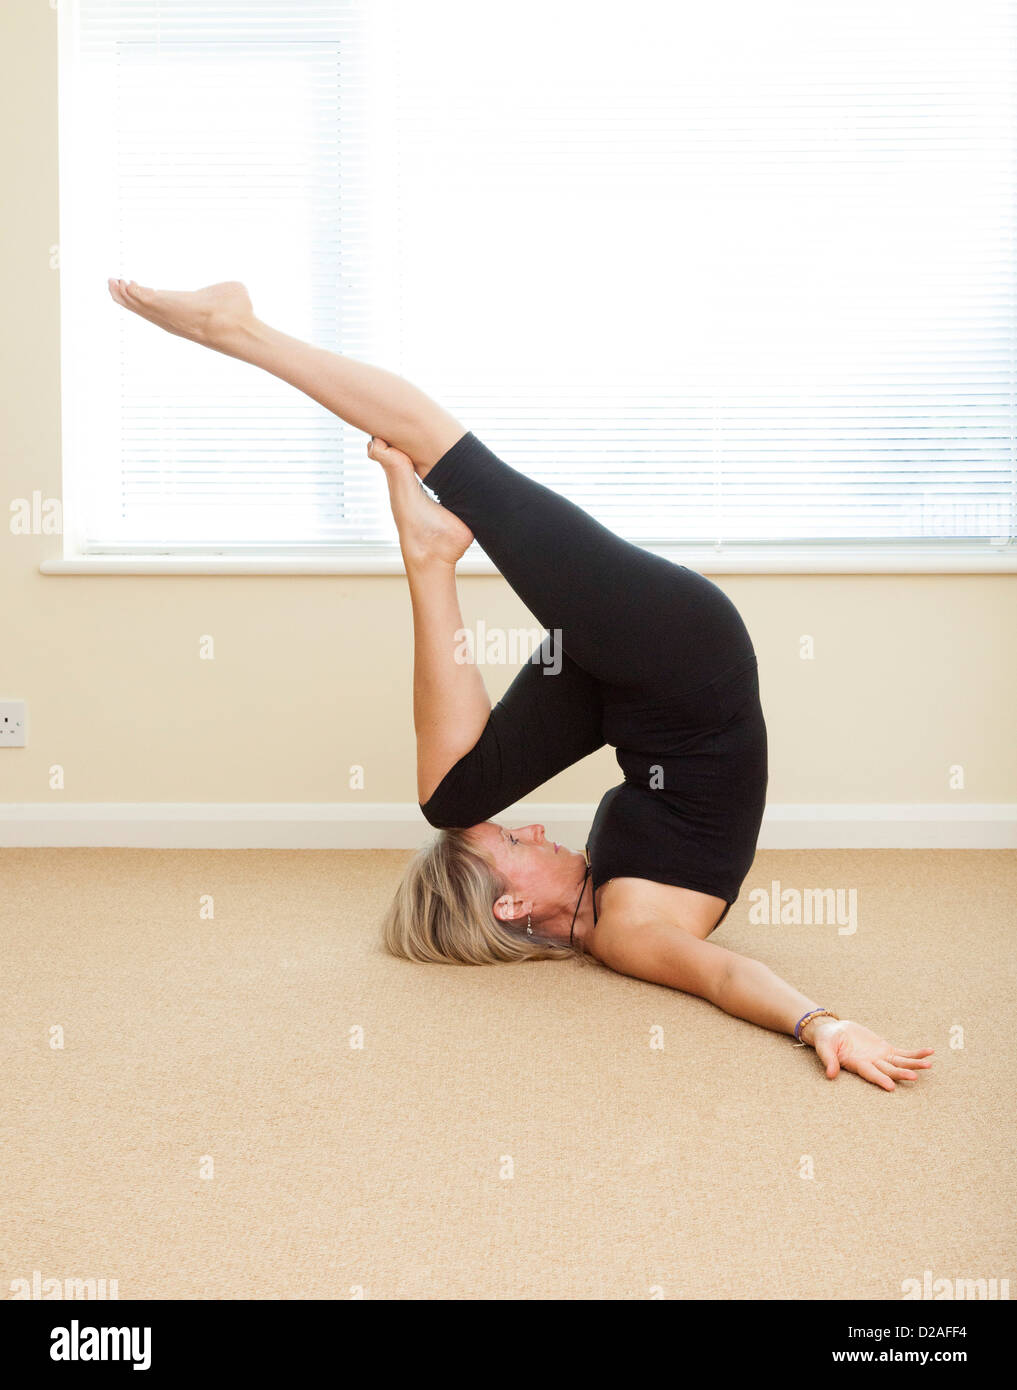 Libellule - yoga pose Banque D'Images